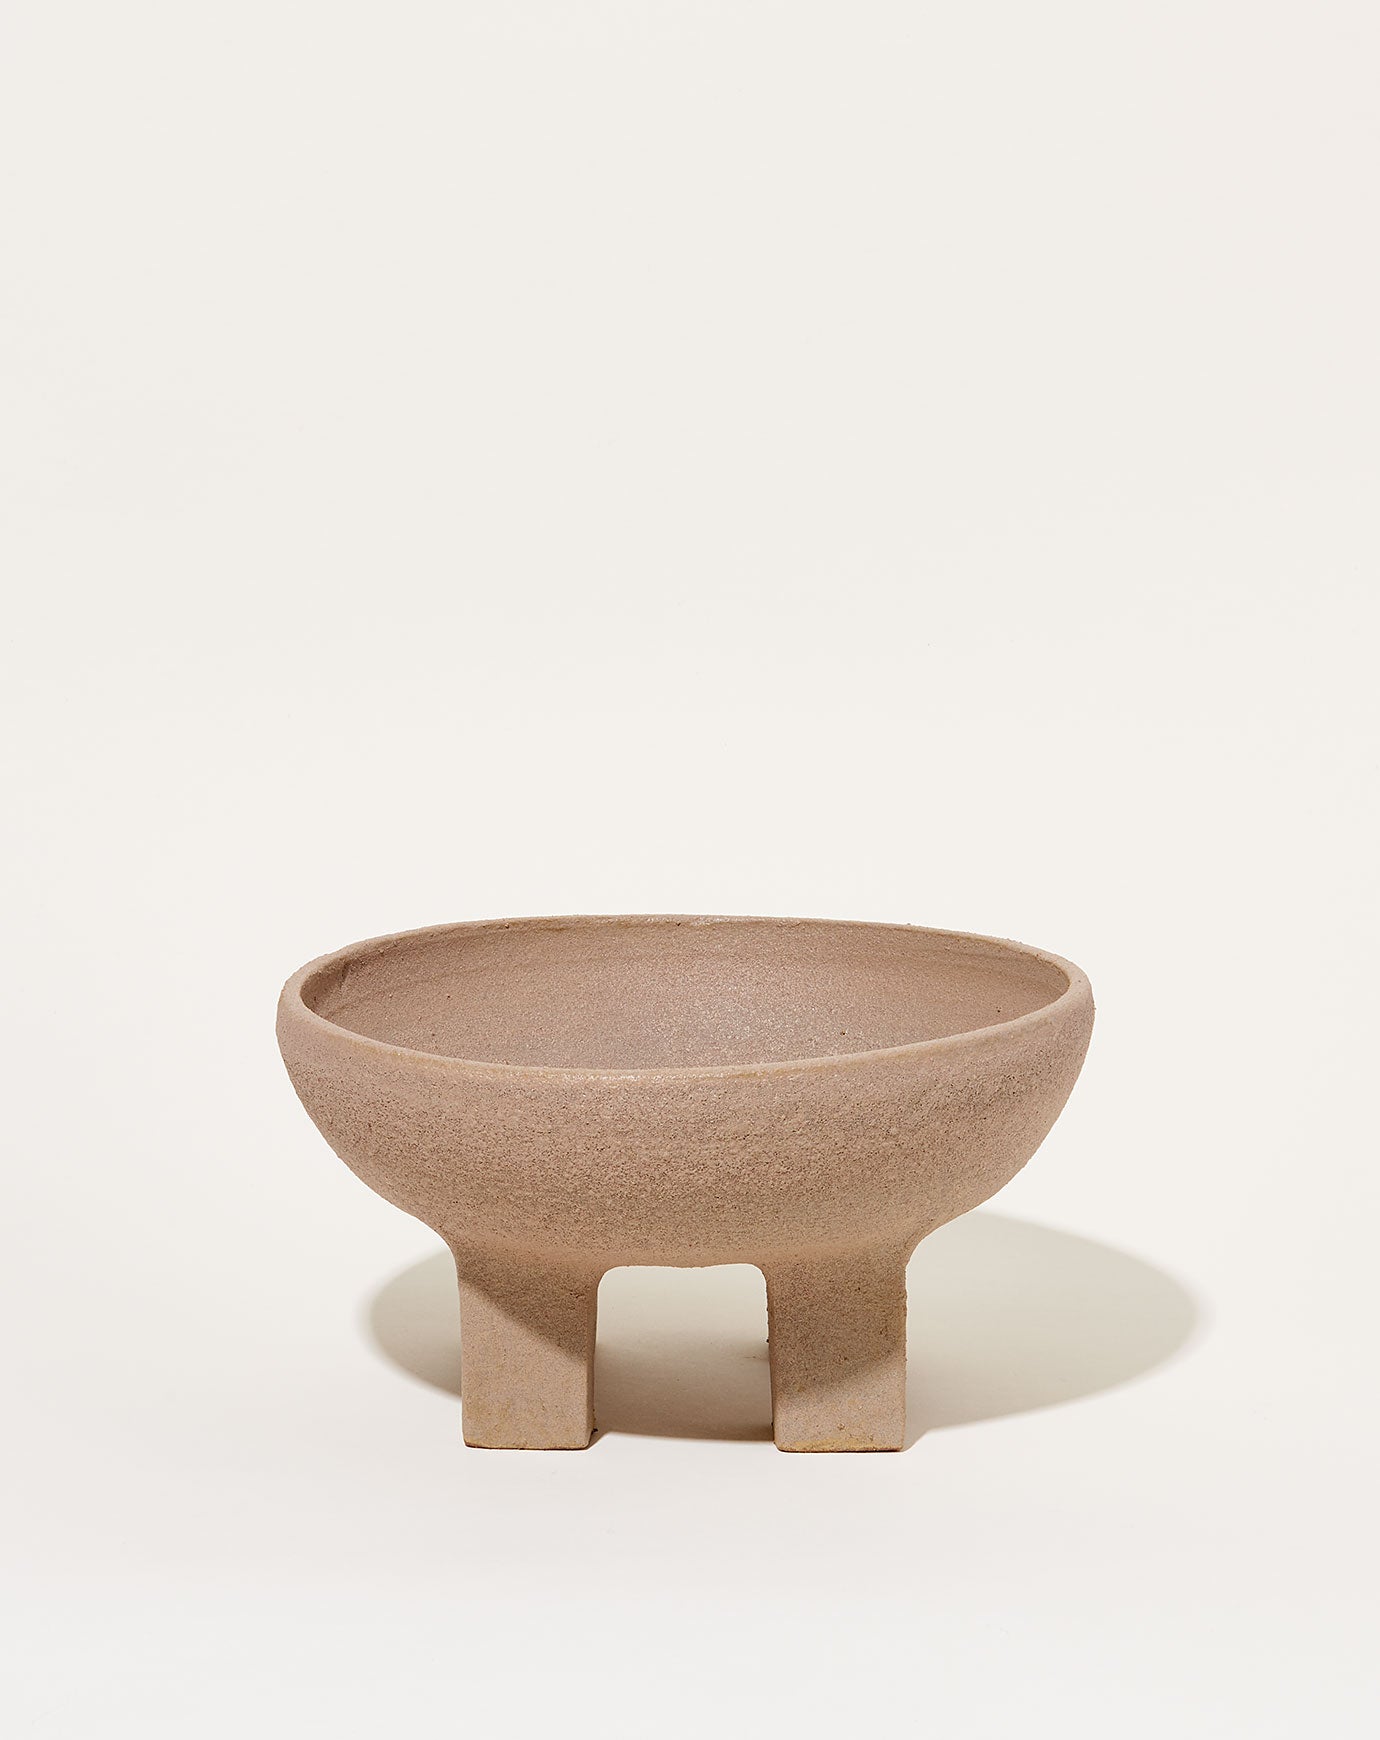 Nur Ceramics Ritual Bowl in Textured Taupe